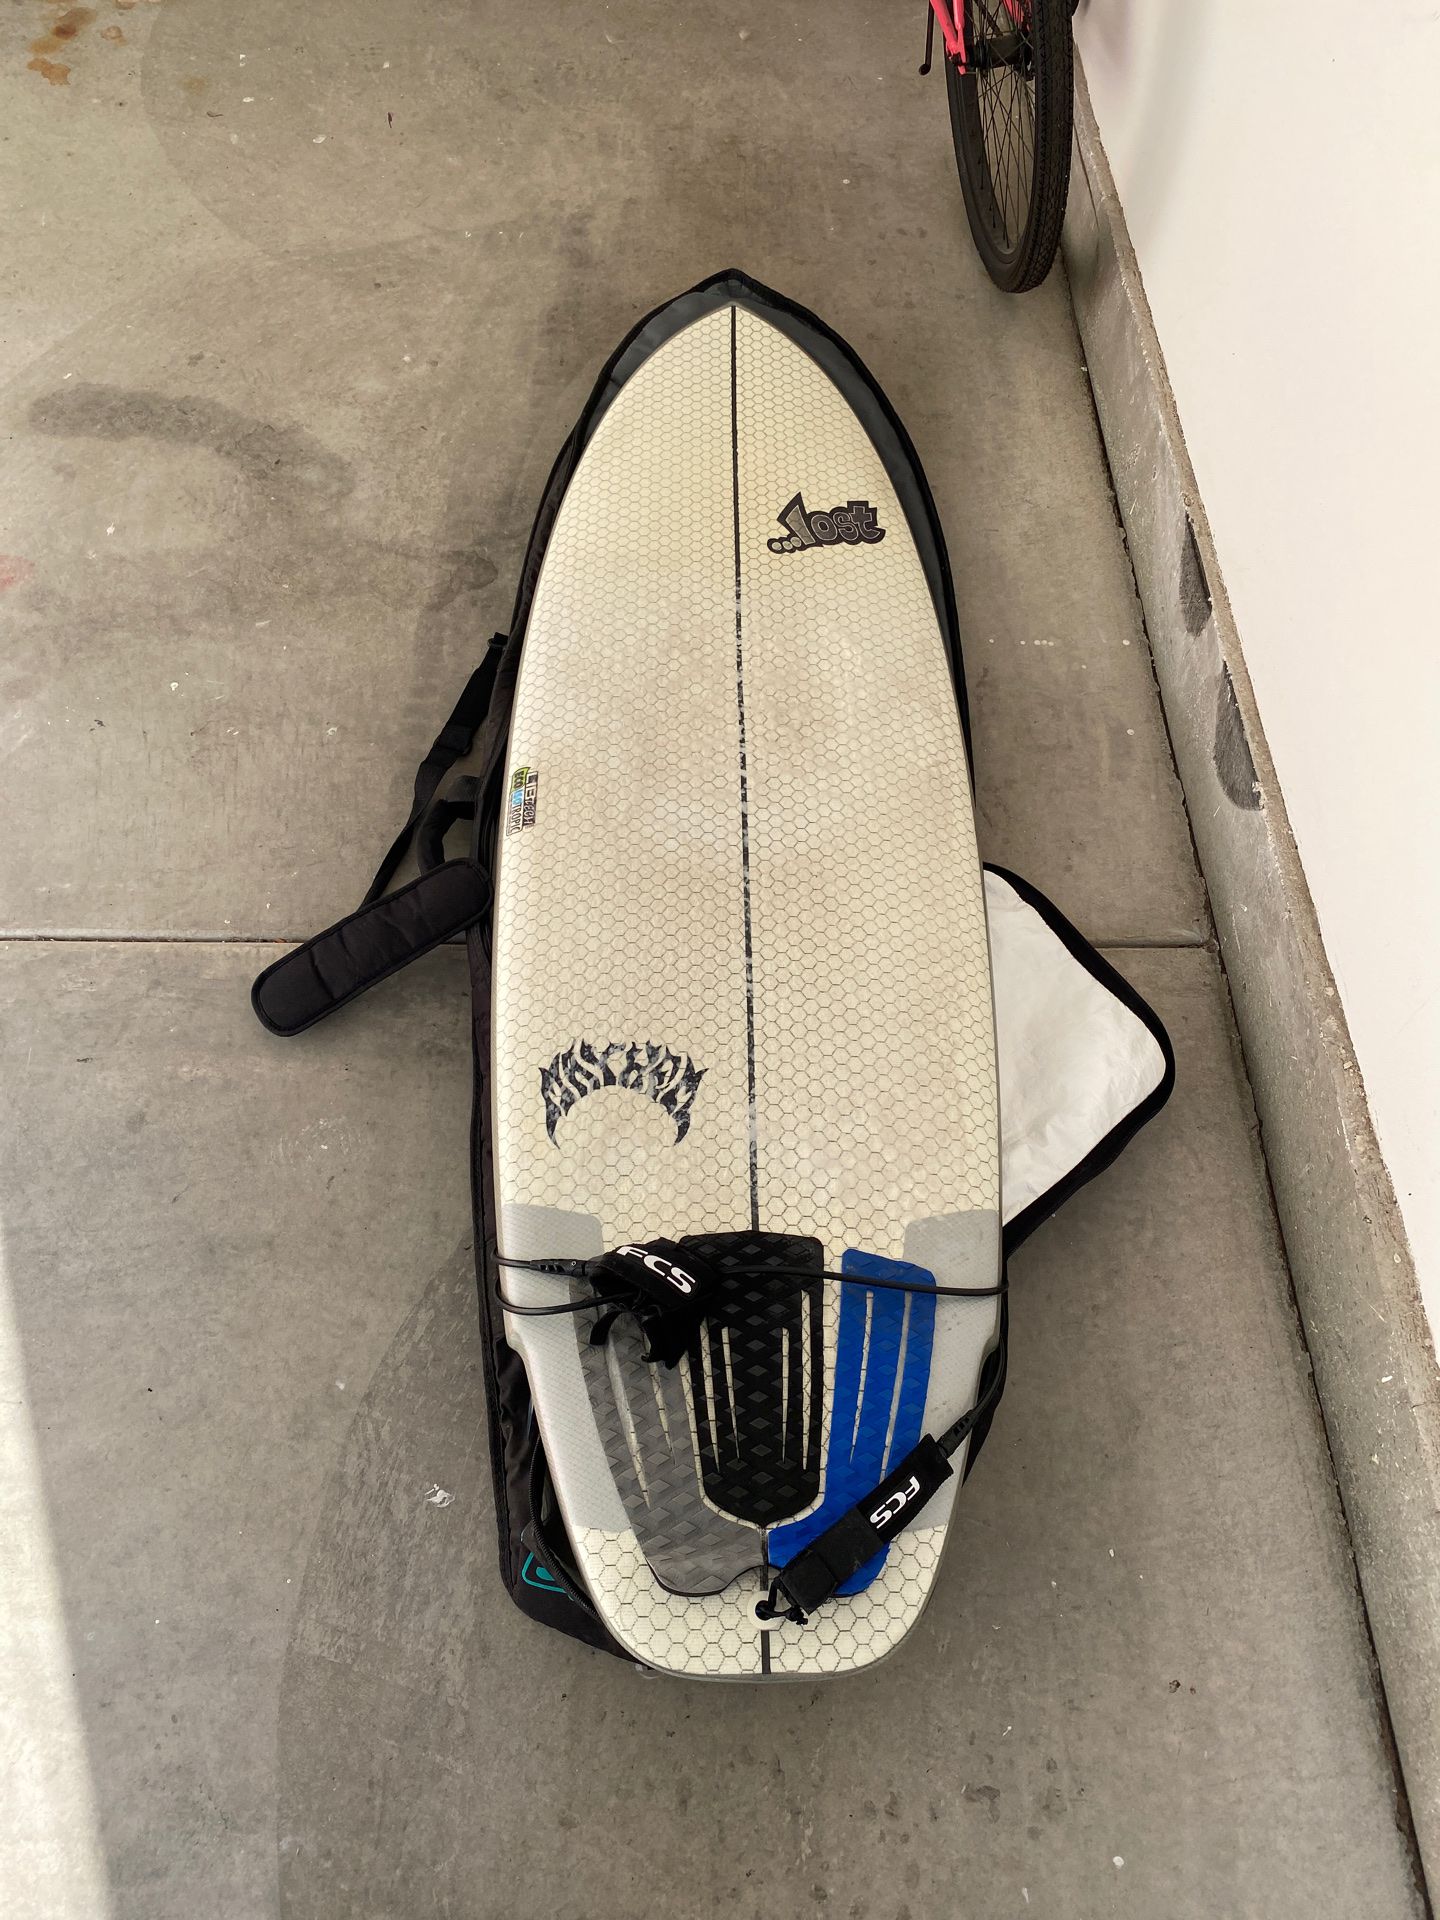 Lost * Lib - Surfboard